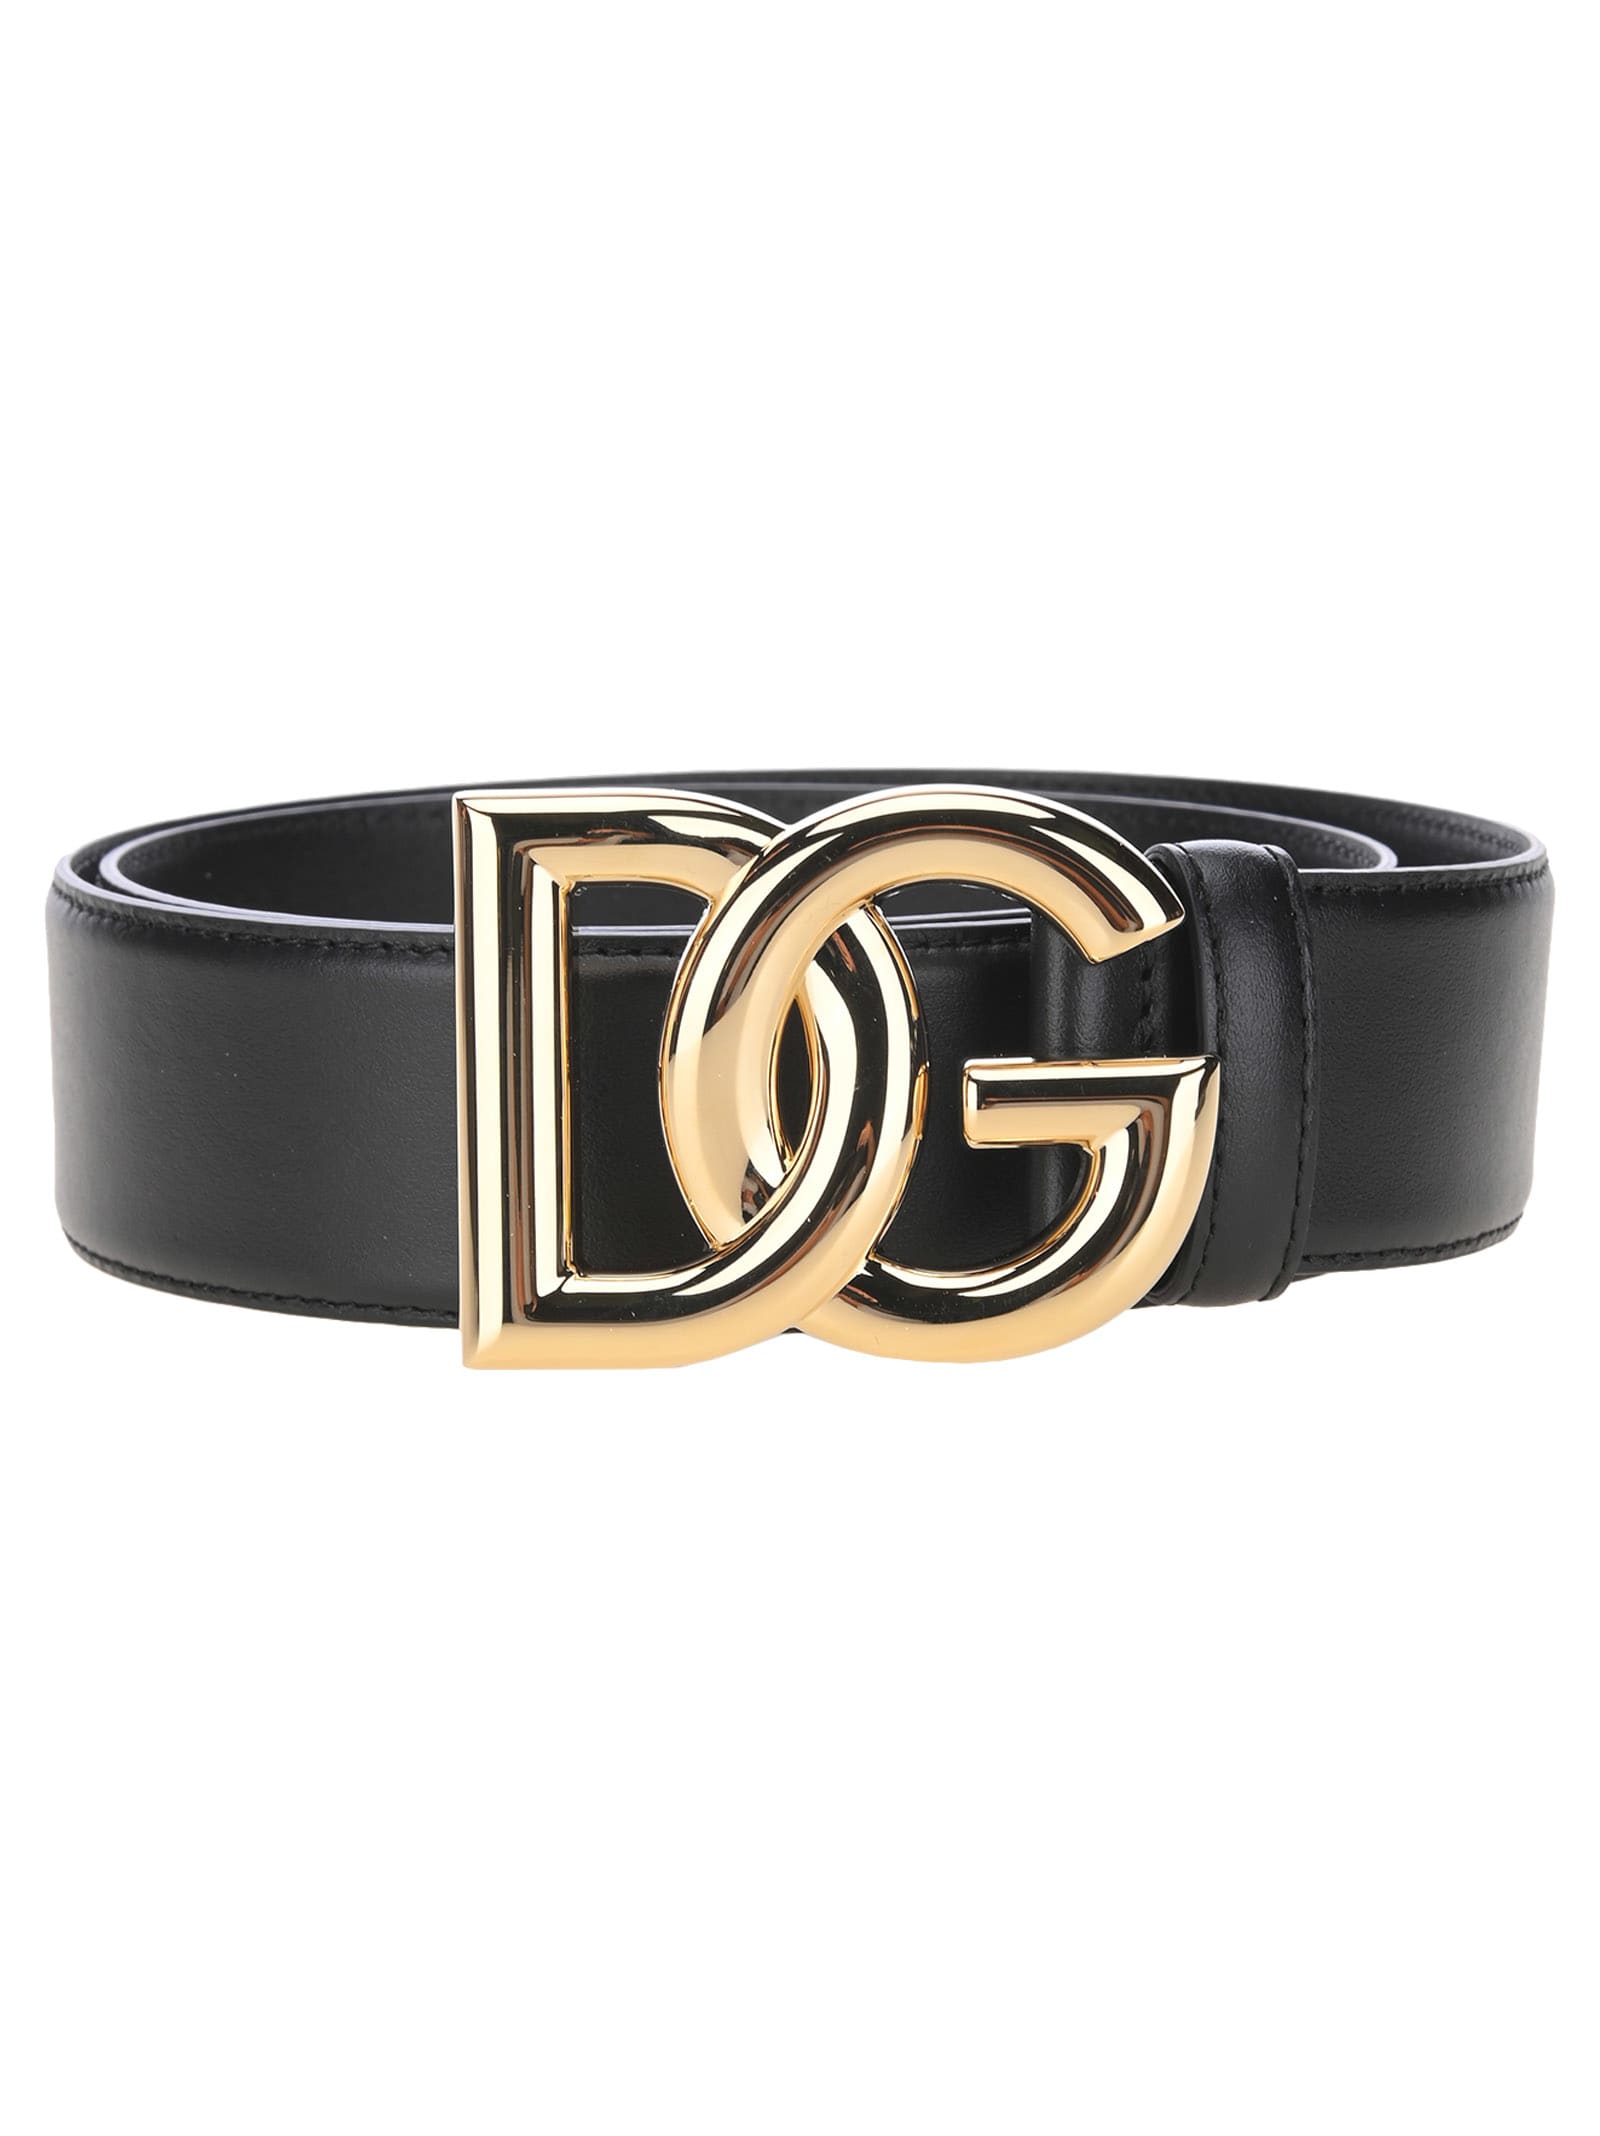 Dolce & Gabbana Dolce & gabbana Calfskin Belt With Dg Logo